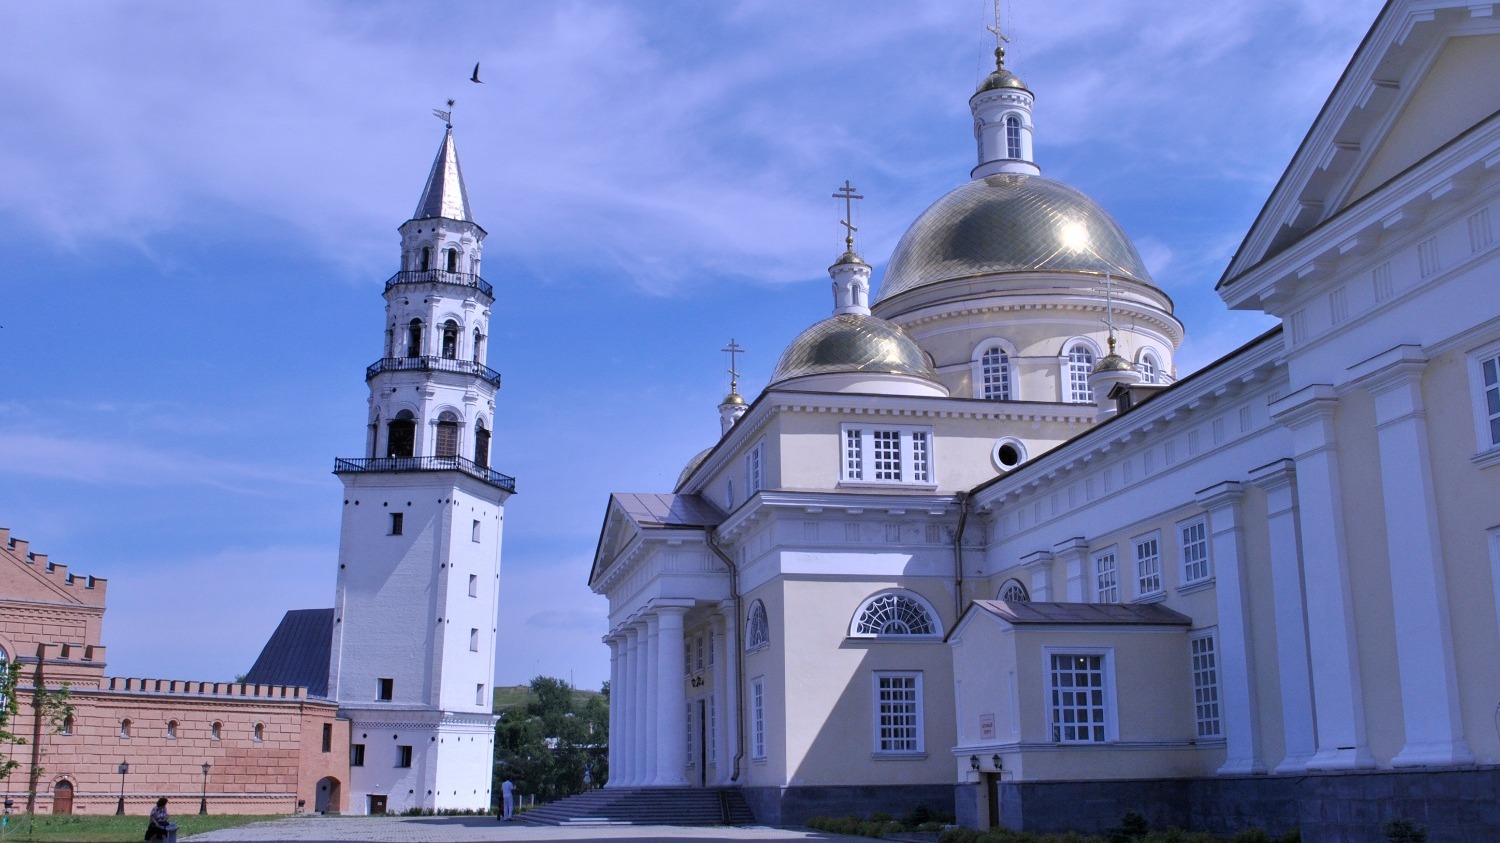 Невьянск знаменит своей наклонной башней - почти что Пизанской